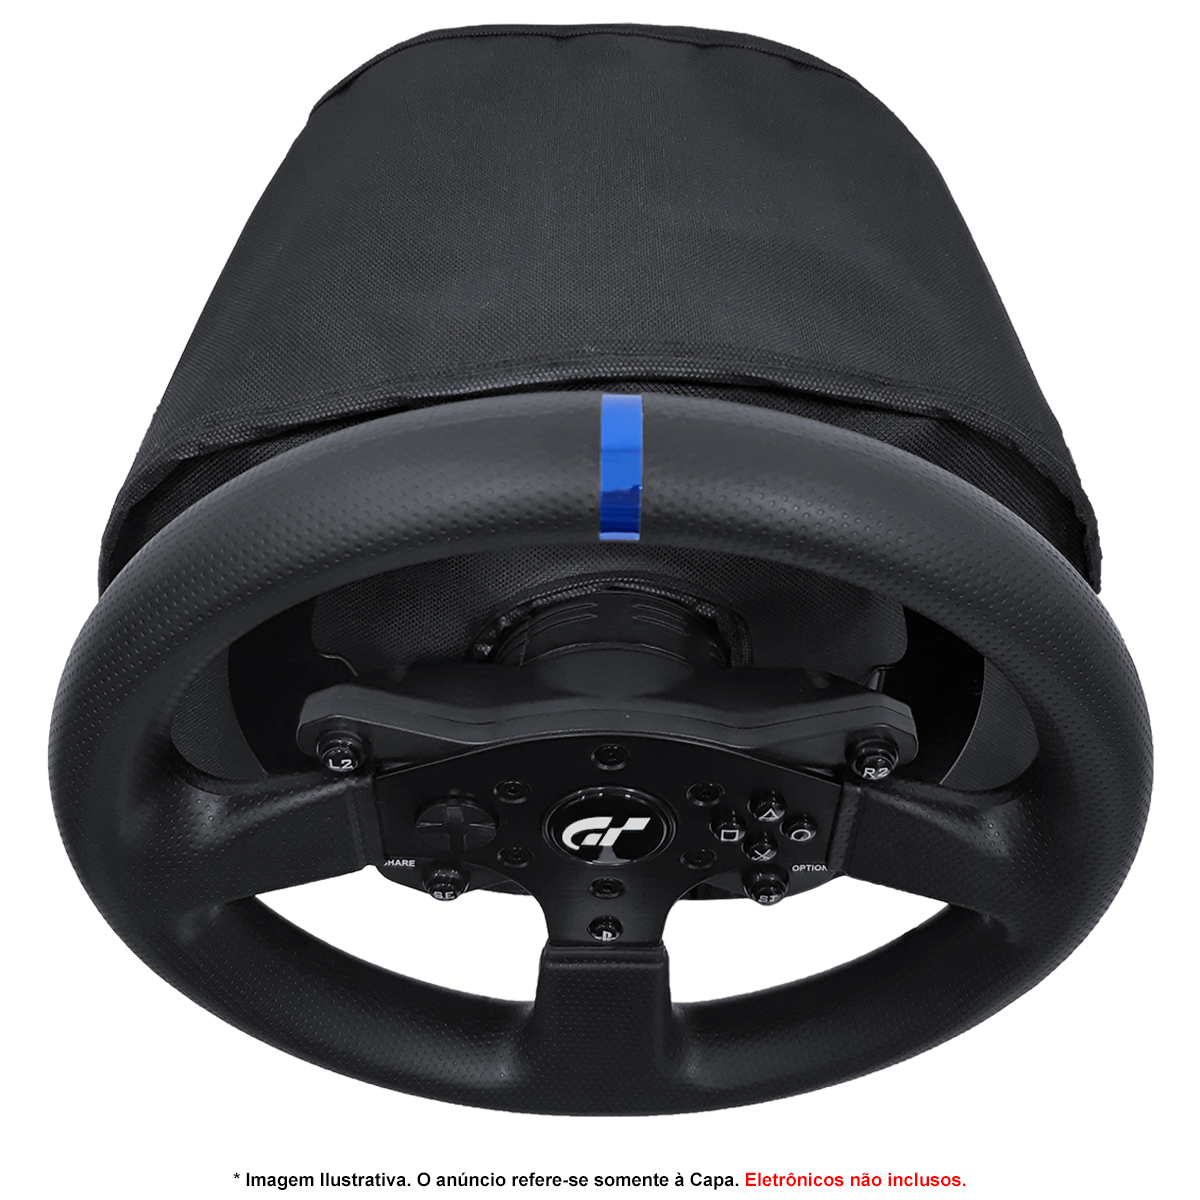 Capa Protetora para Volante Logitech Thrustmaster Fanatec Moza Racing  Simulador Gamer até 28cm de Diâmetro - Qualidade e Proteção em Capas